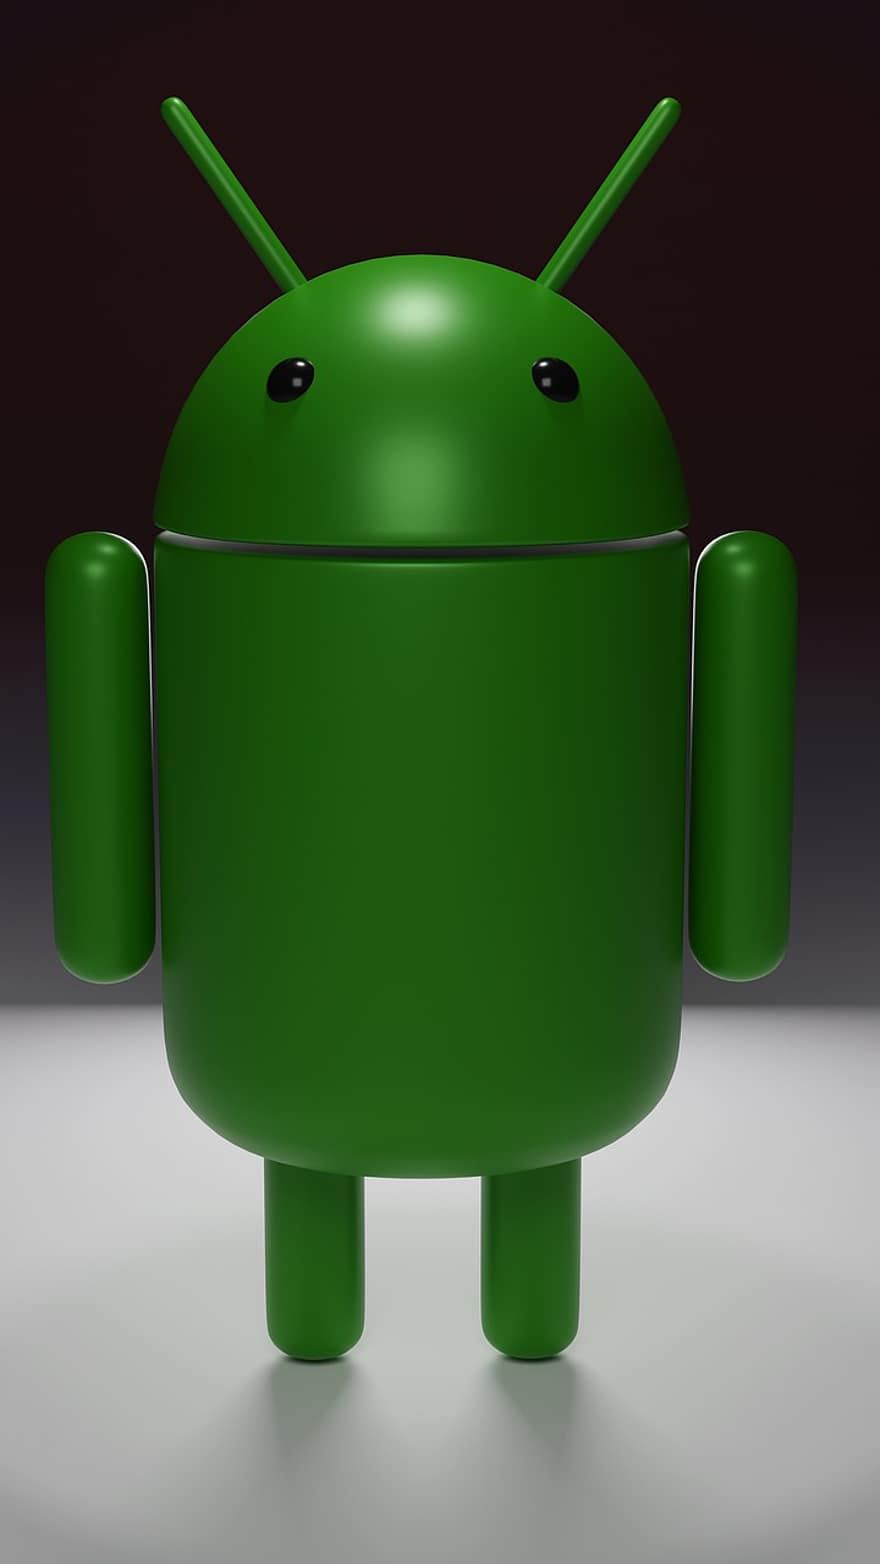 android, robot, logo, stand-alone, tæt på, google, Open source, ikon, minimalistisk, perspektiv, stående